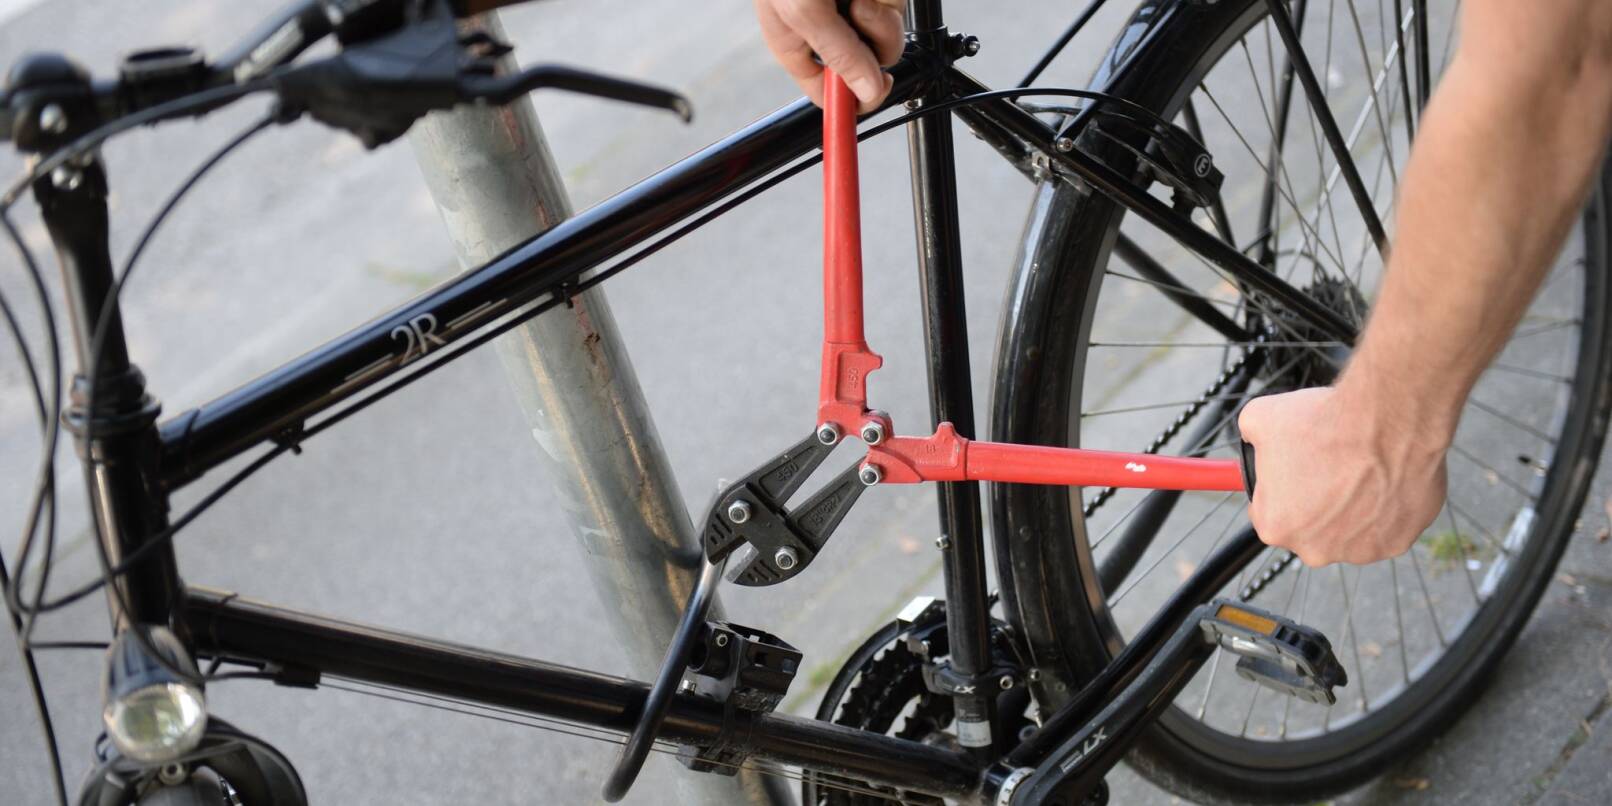 Die Versicherungen raten dringend, Fahrräder mit guten Ketten- oder Bügelschlössern zu sichern (Symbolbild).